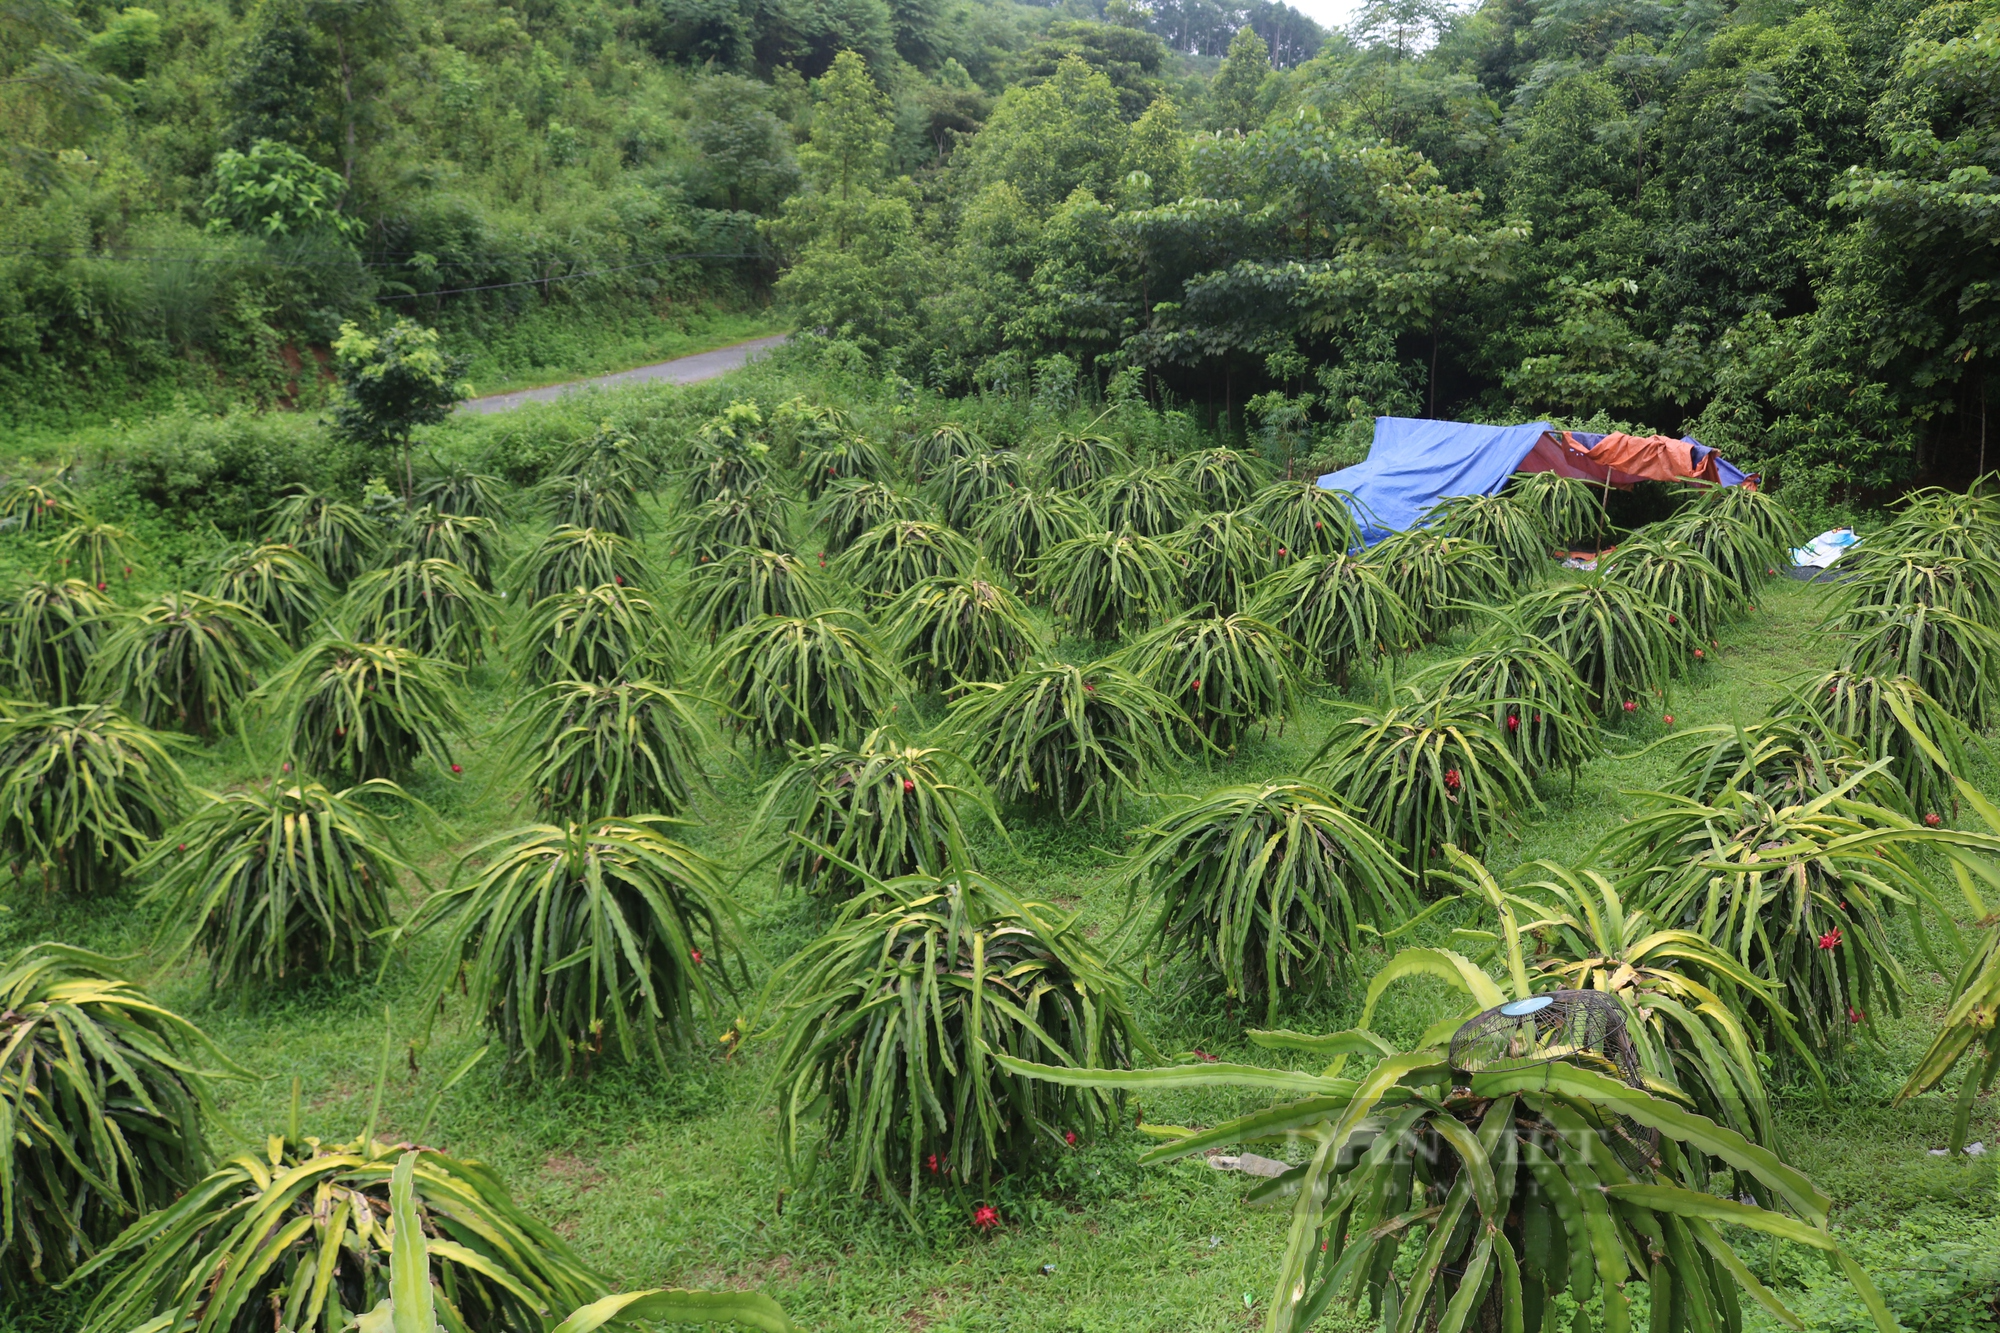 Thanh long ruột đỏ Bình Thuận bén rễ trên đất Lào Cai thành sản phẩm OCOP - Ảnh 1.